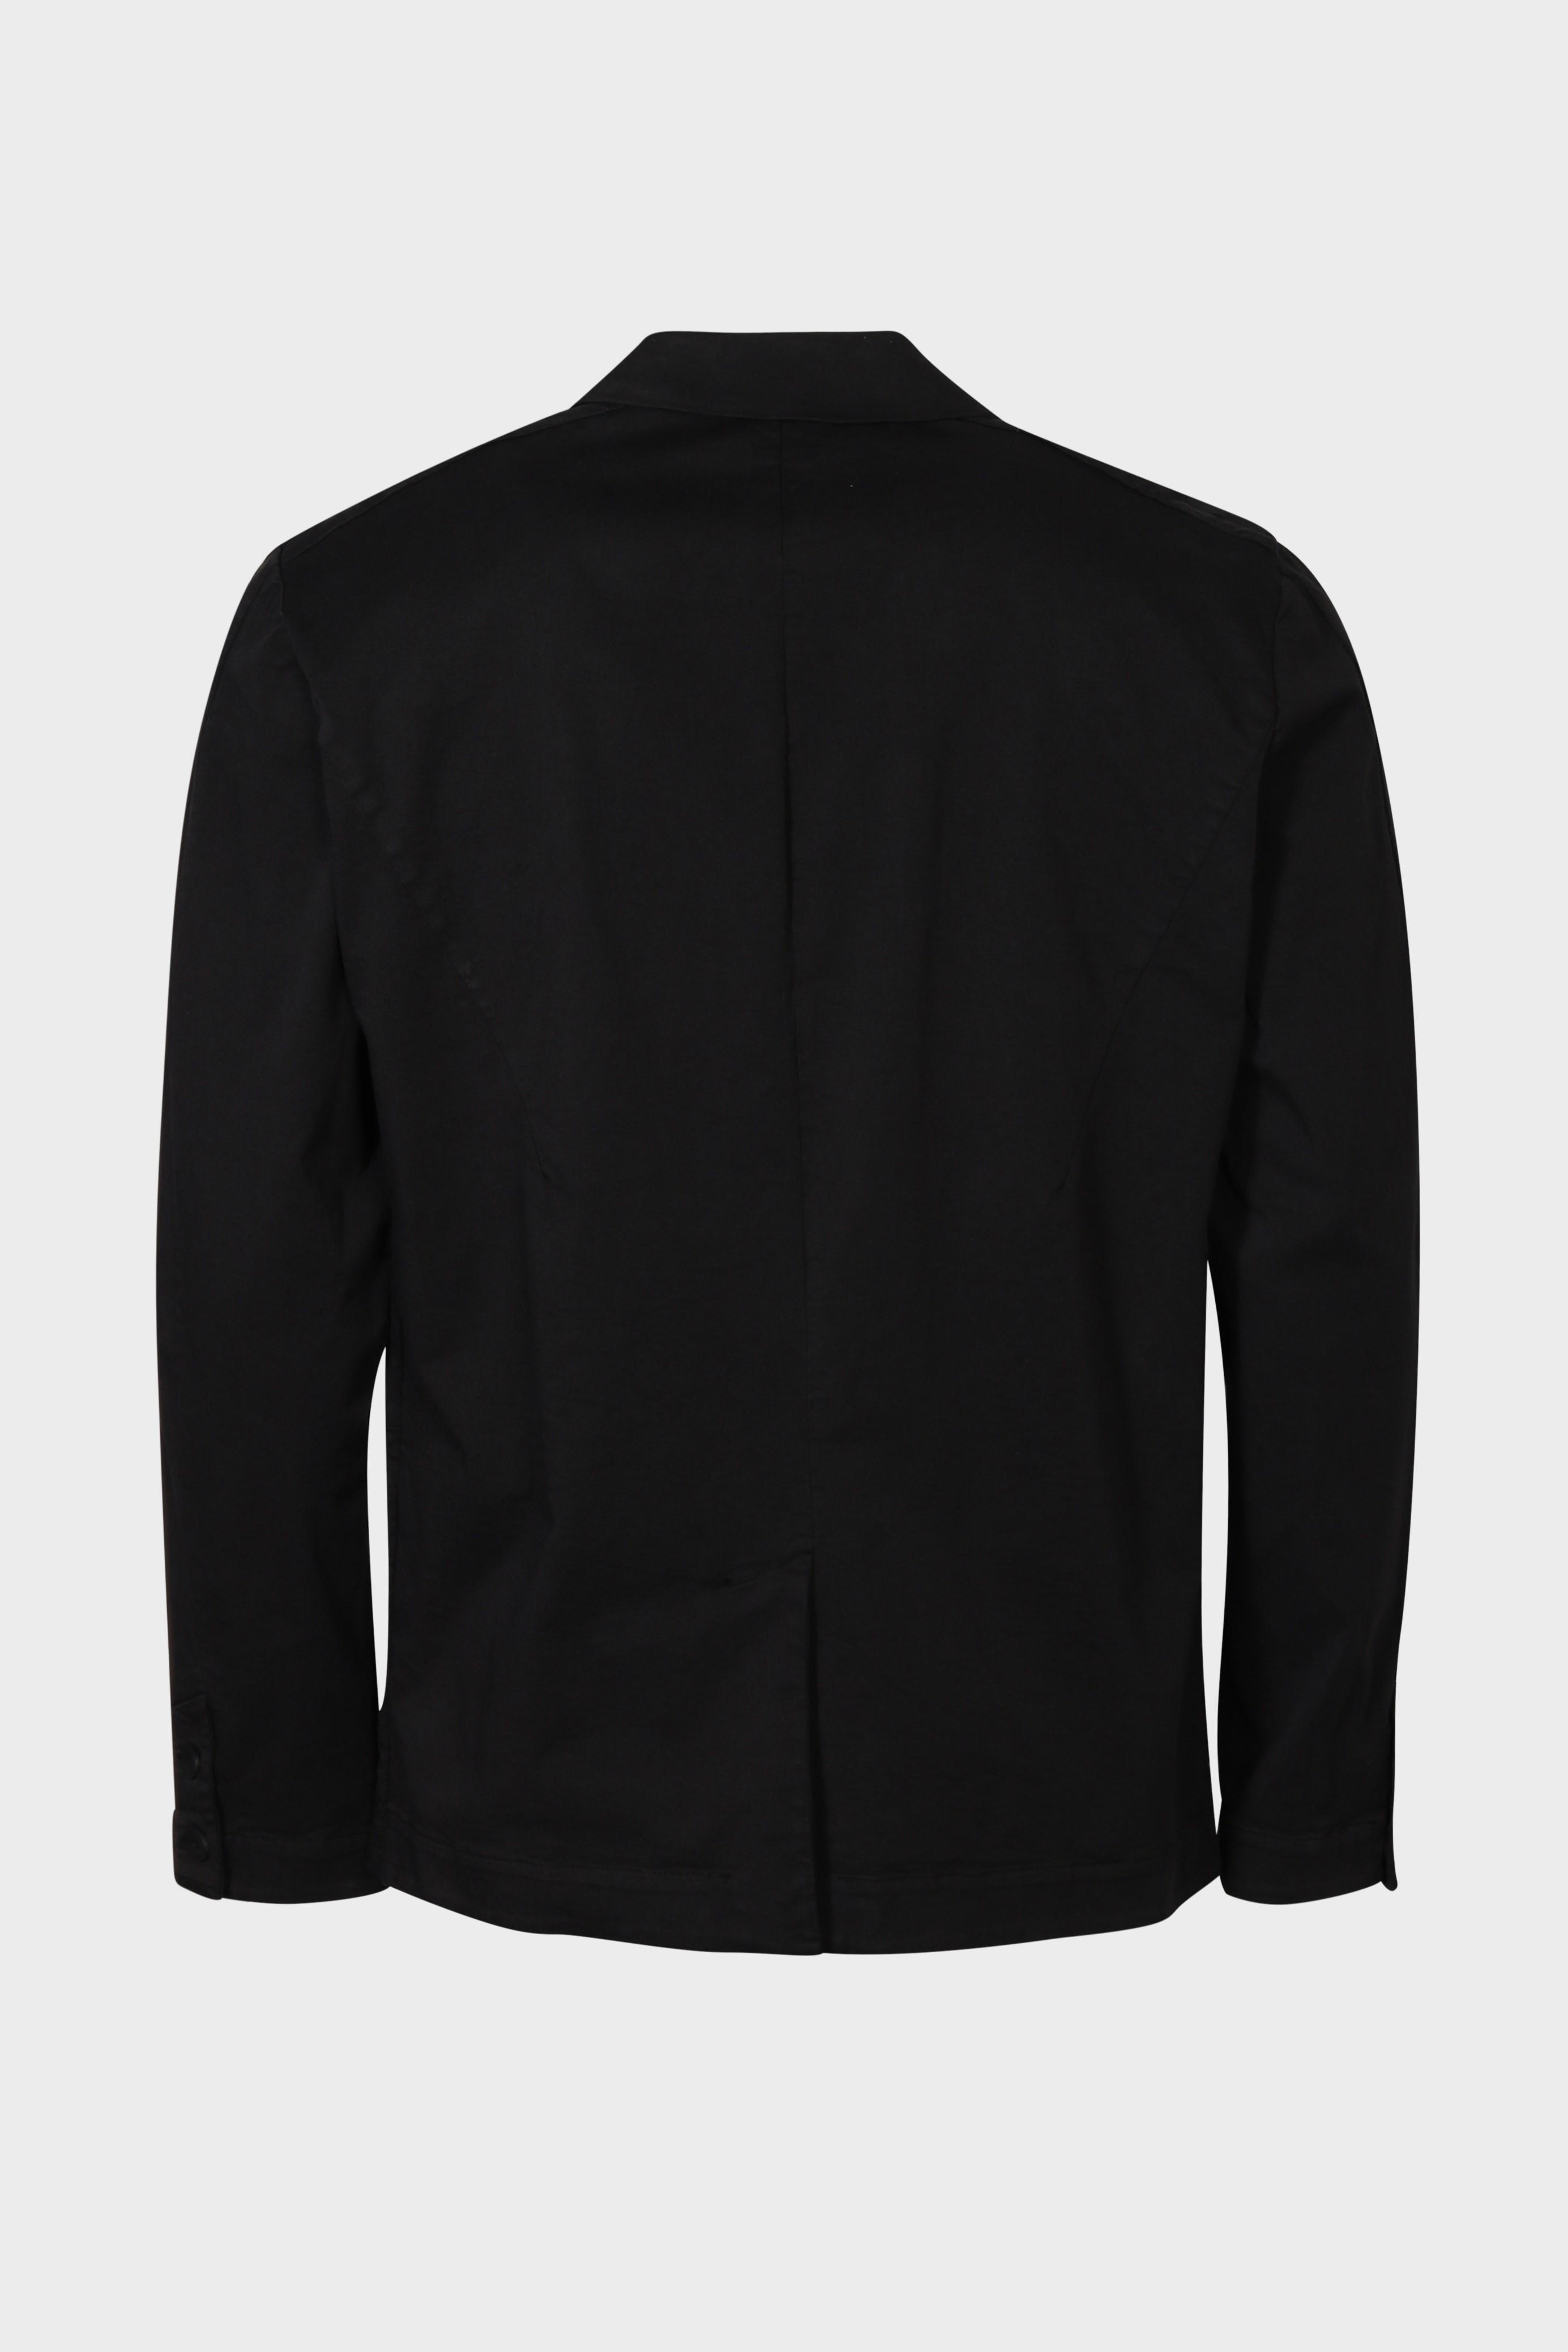 TRANSIT UOMO Cotton/Linen Jacket in Black